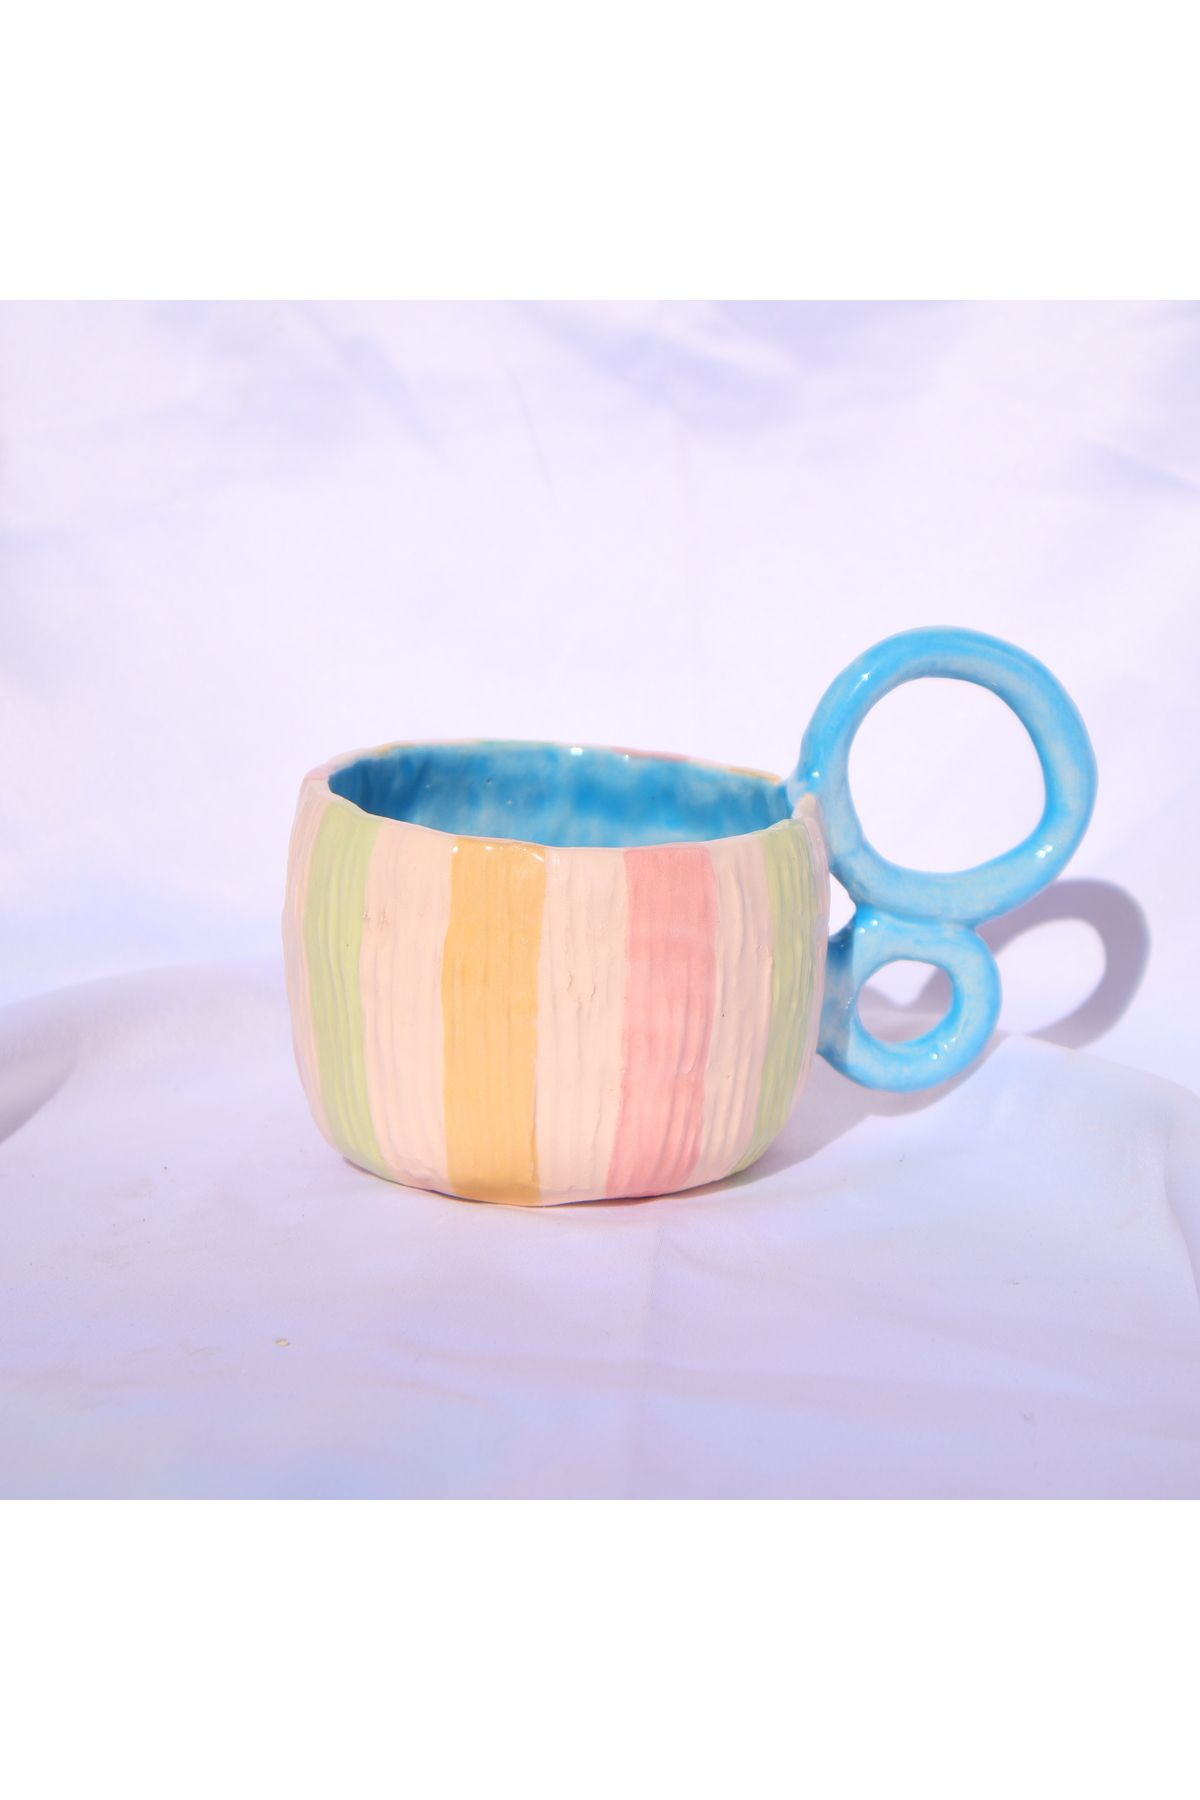 Lily & Loly Ceramics Büyük Kulplu, Soft Renkli Dokulu 200 ml El Yapımı Seramik Kupa - Sevgililer Günü İçin Trendyol'da